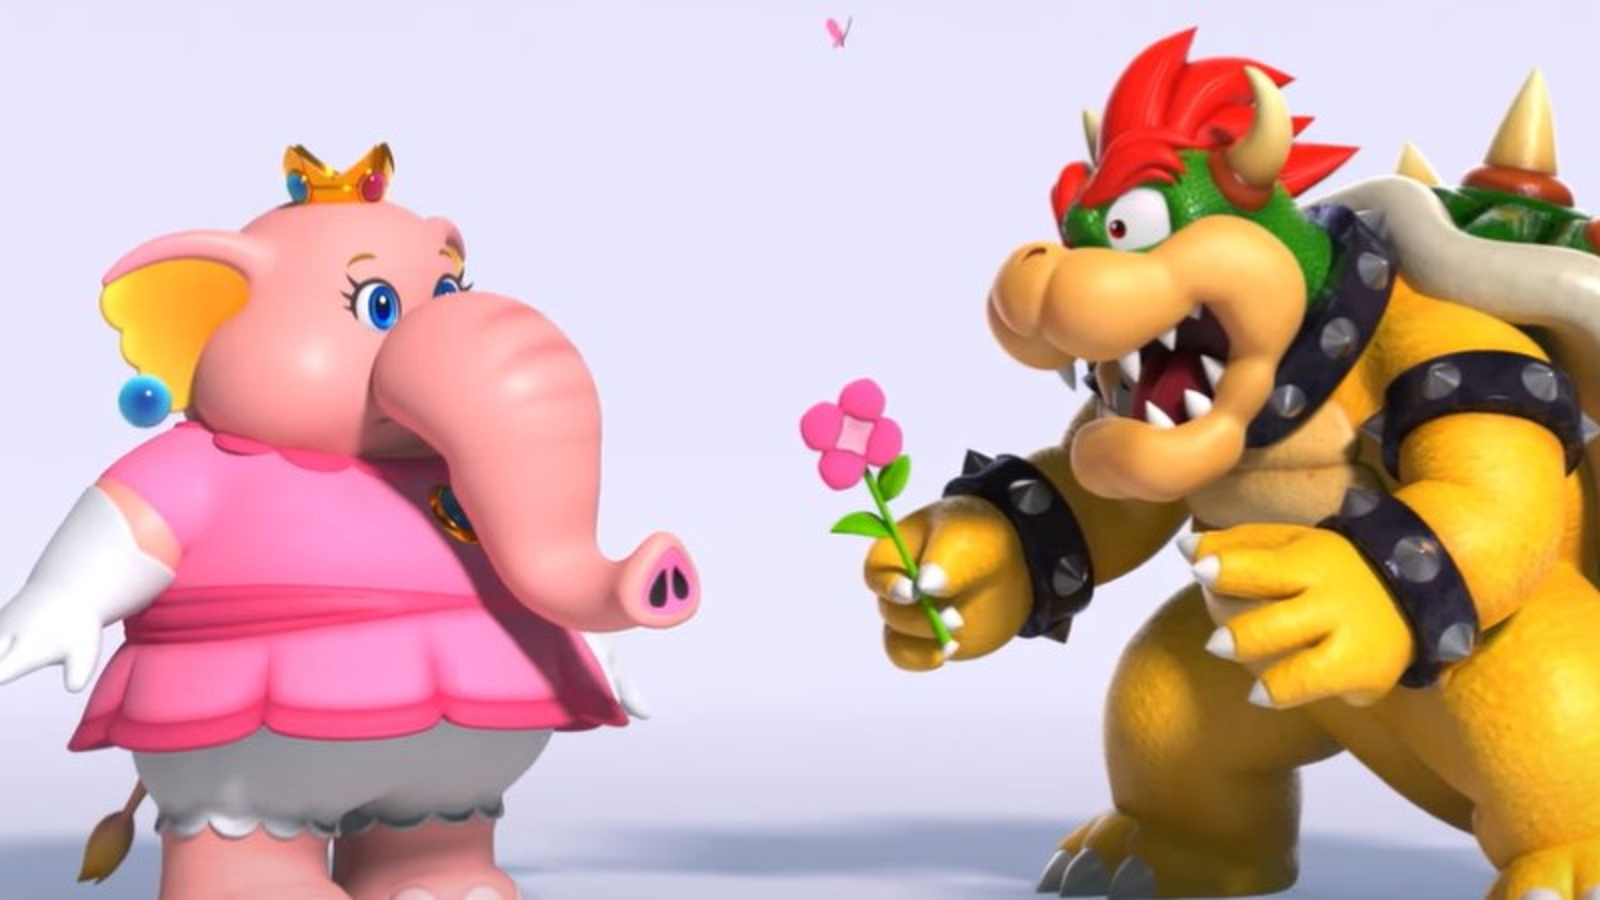 Peach LOVES Bowser ❤️ - THE TRUTH behind Super Mario - Part 1